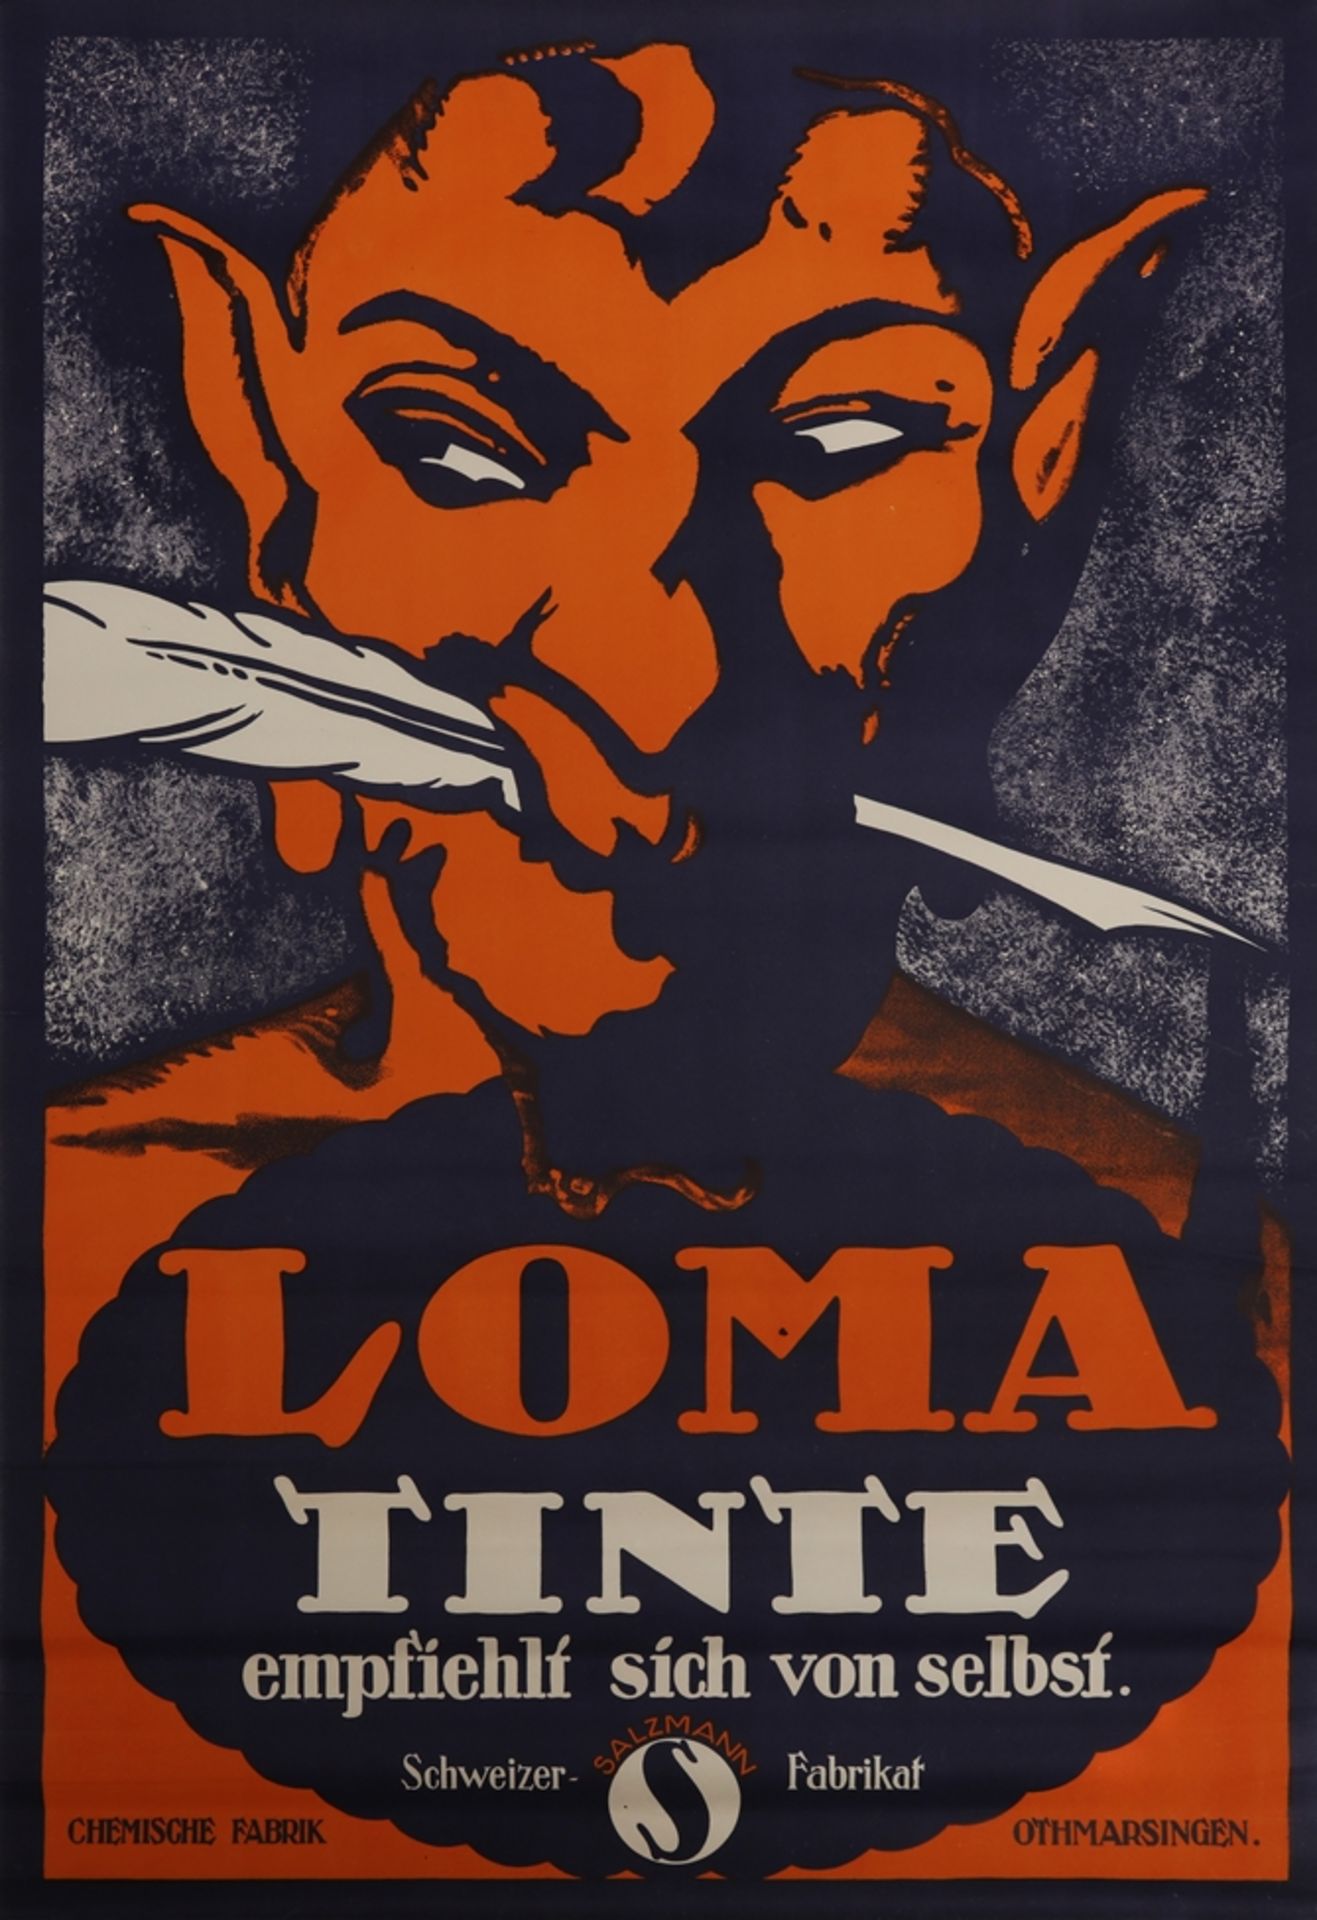 Poster Loma Tinte, Othmarsingen/Switzerland, around 1920